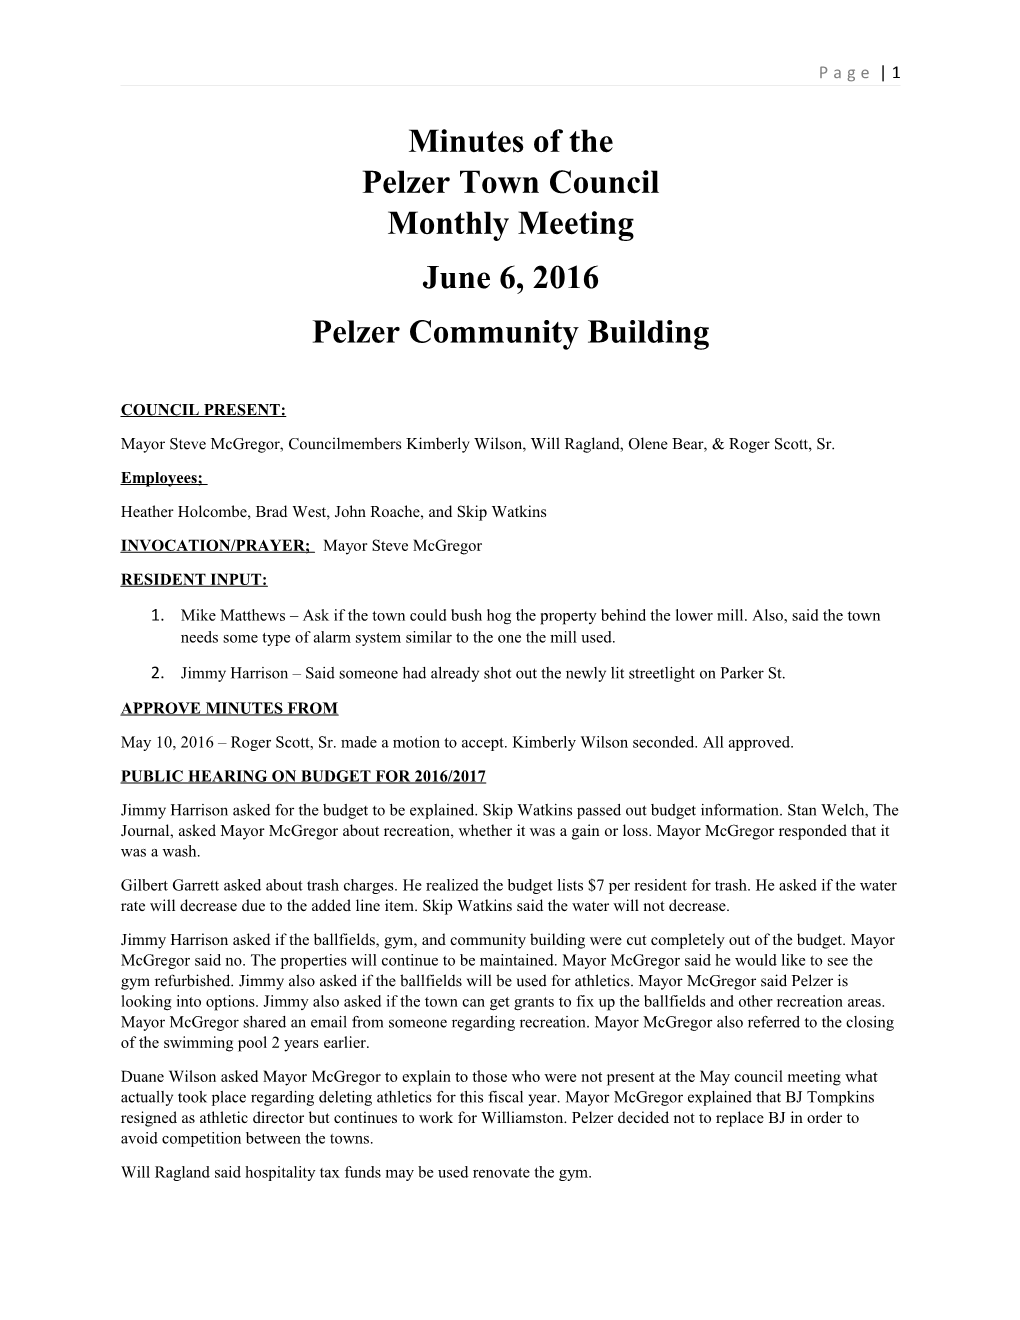 Pelzer Town Council